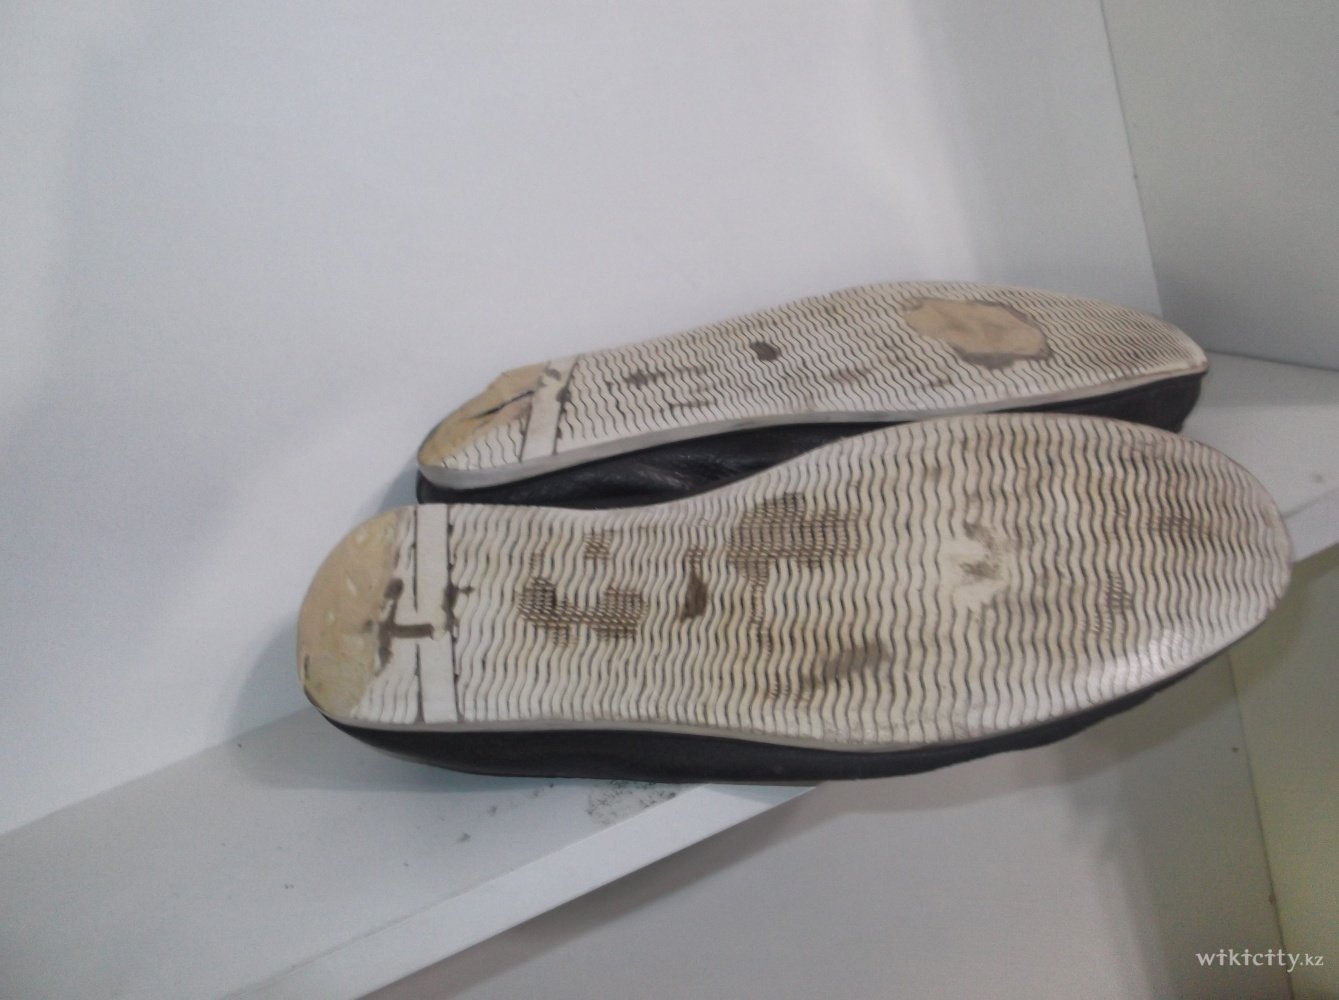 Фото Art florence - Алматы. Реставрация ходовой  части  обуви. Фото  обуви  до  ремонта.